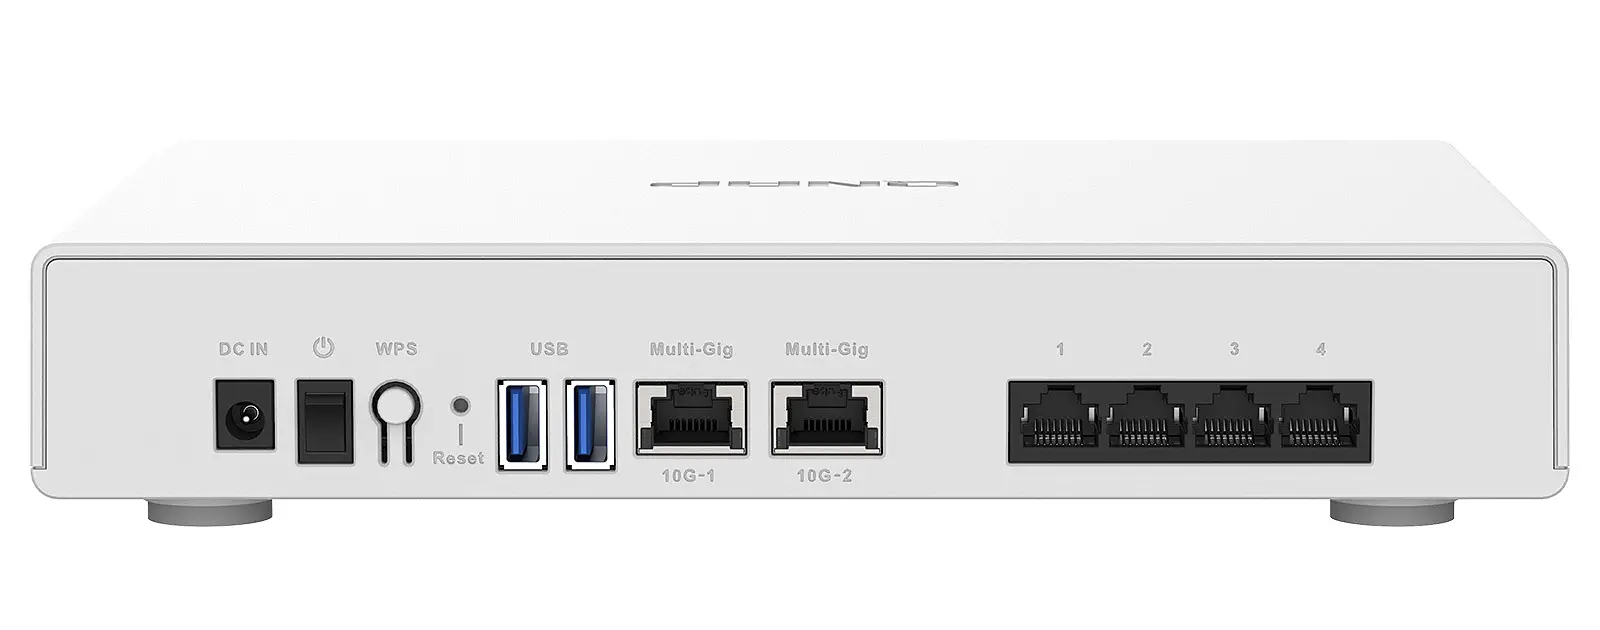 El Qnap QHora-301W está equipado con 6 puertos Ethernet incluyendo 2 10GbE